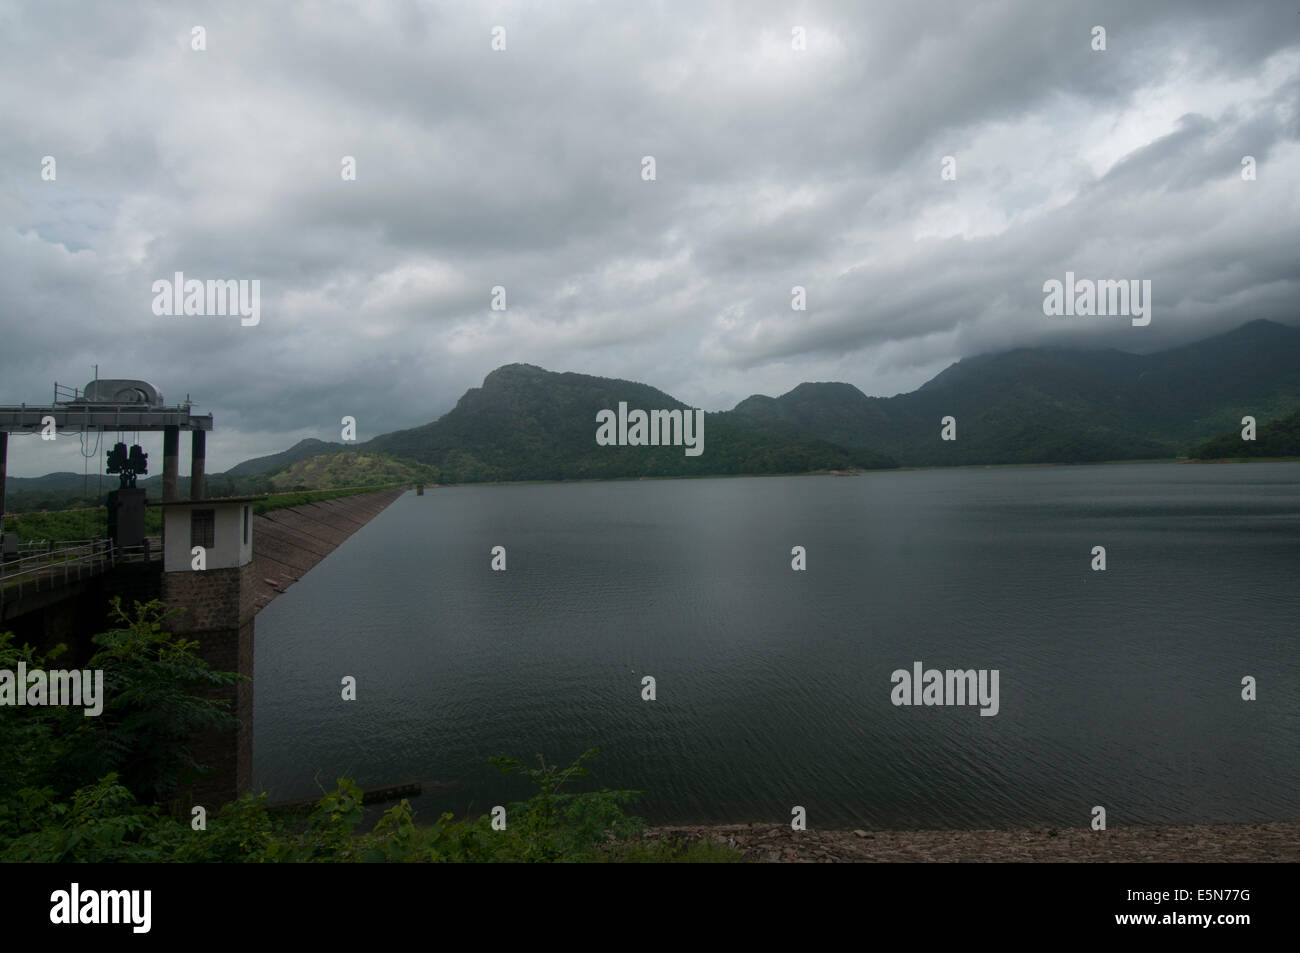 Pothundy dam, Nelliyampathy, pallakad Foto de stock